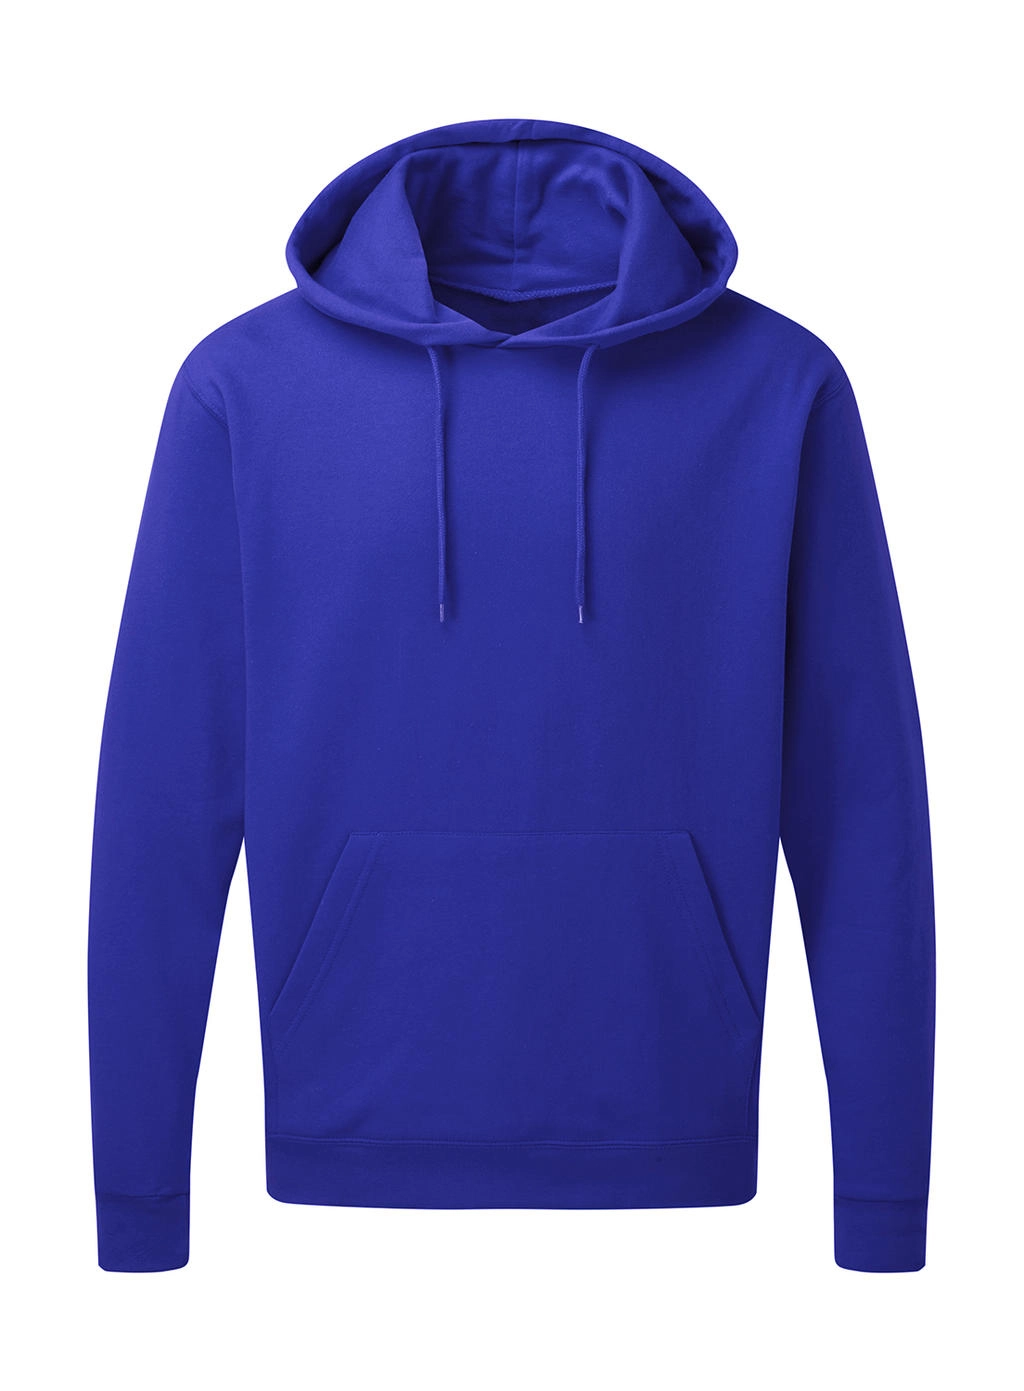 Hooded Sweatshirt Men zum Besticken und Bedrucken in der Farbe Royal Blue mit Ihren Logo, Schriftzug oder Motiv.